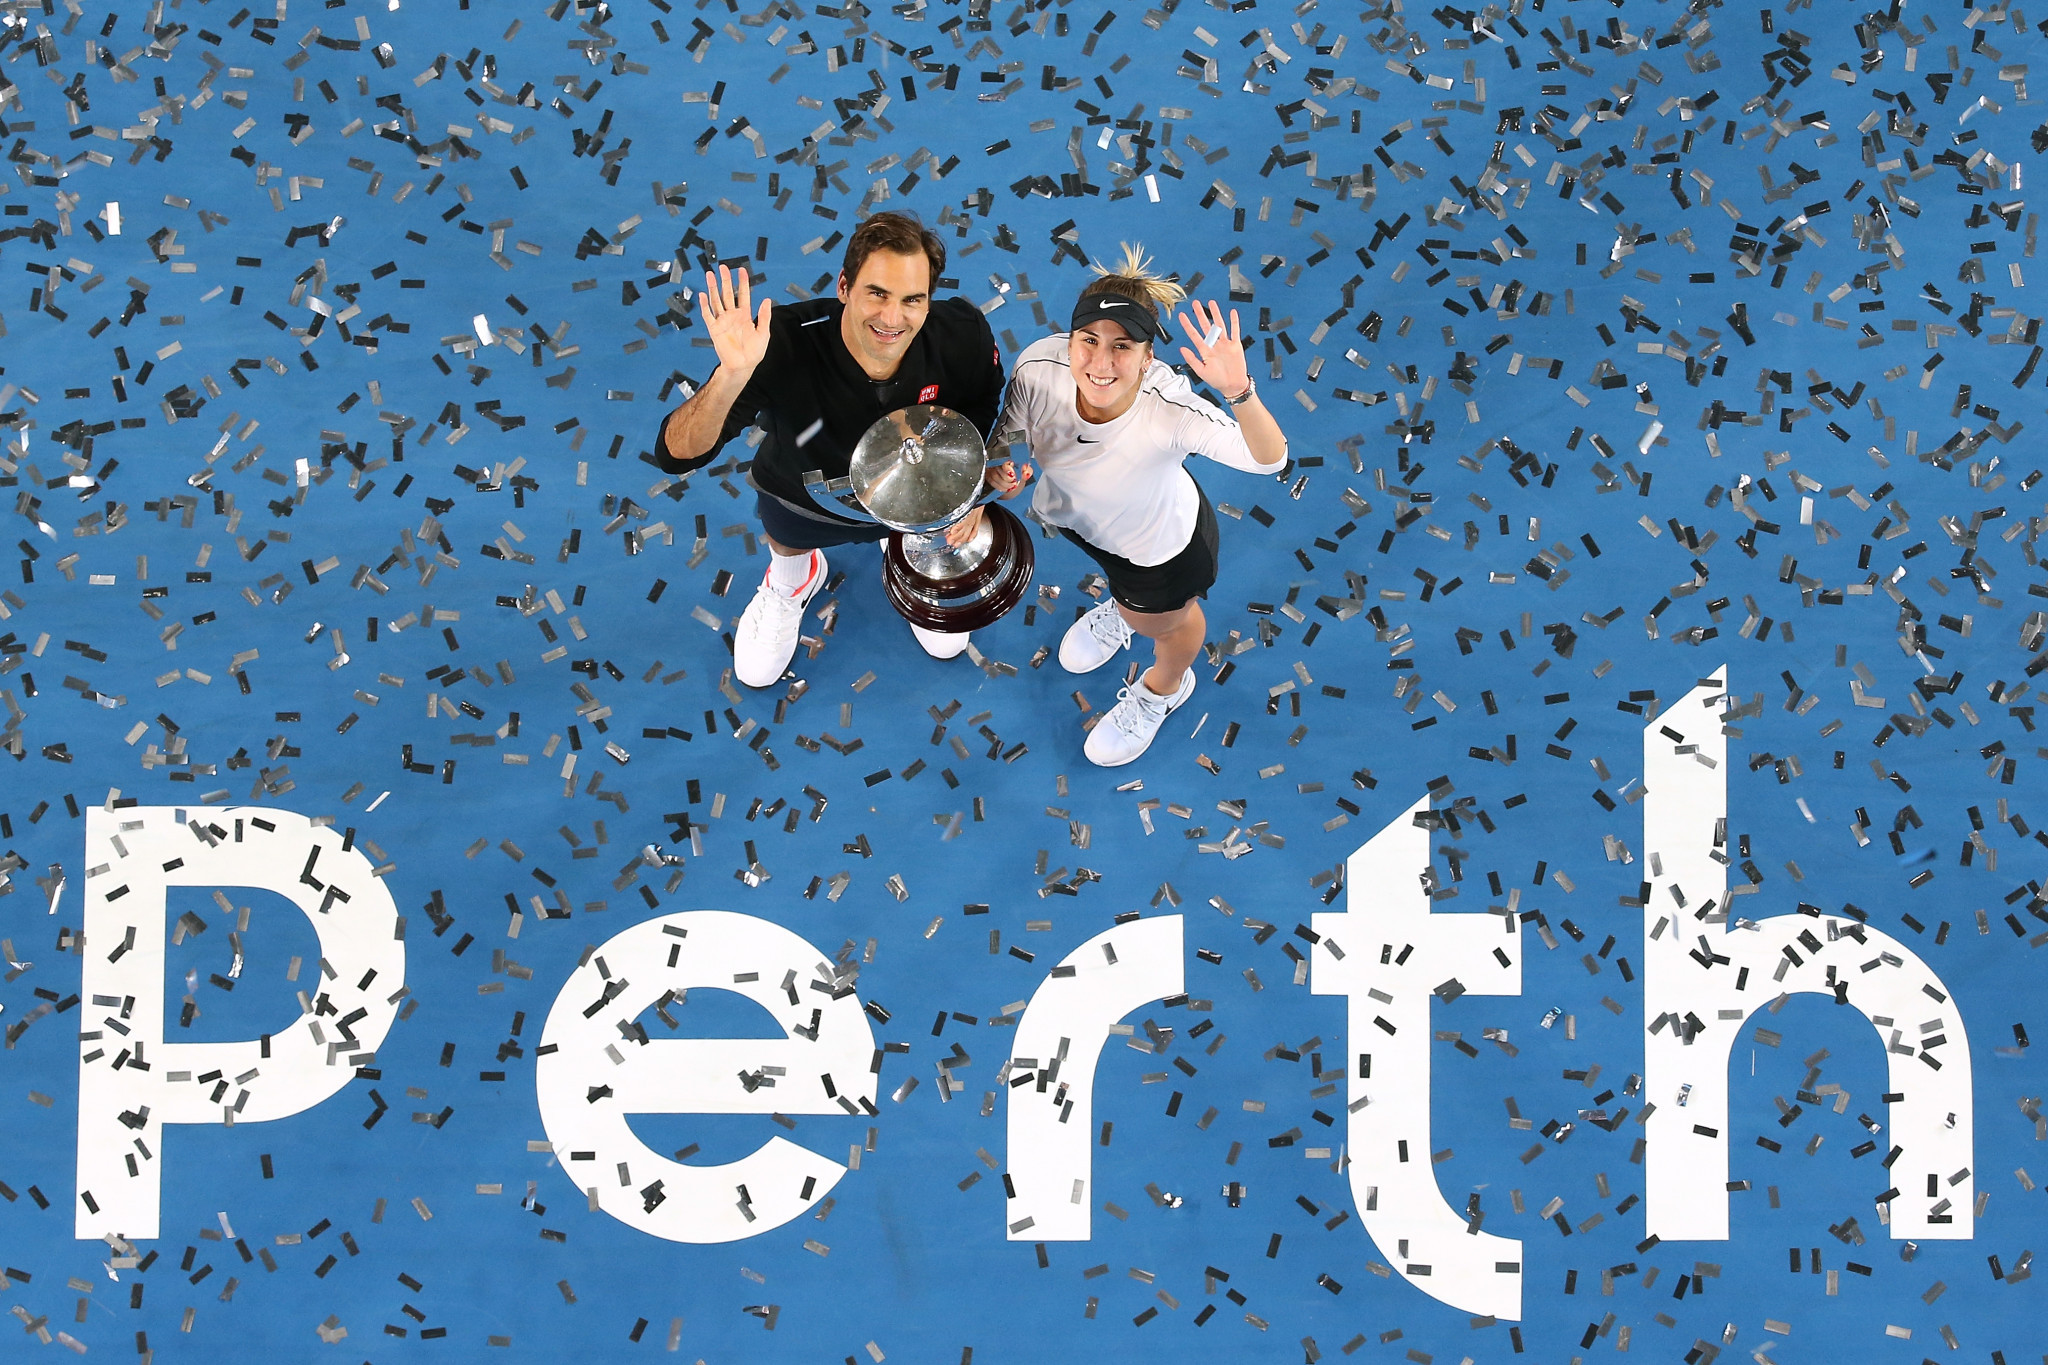 Roger Federer and Belinda Bencic beat Alexander Zverev and Angelique Kerber in today's final ©Getty Images